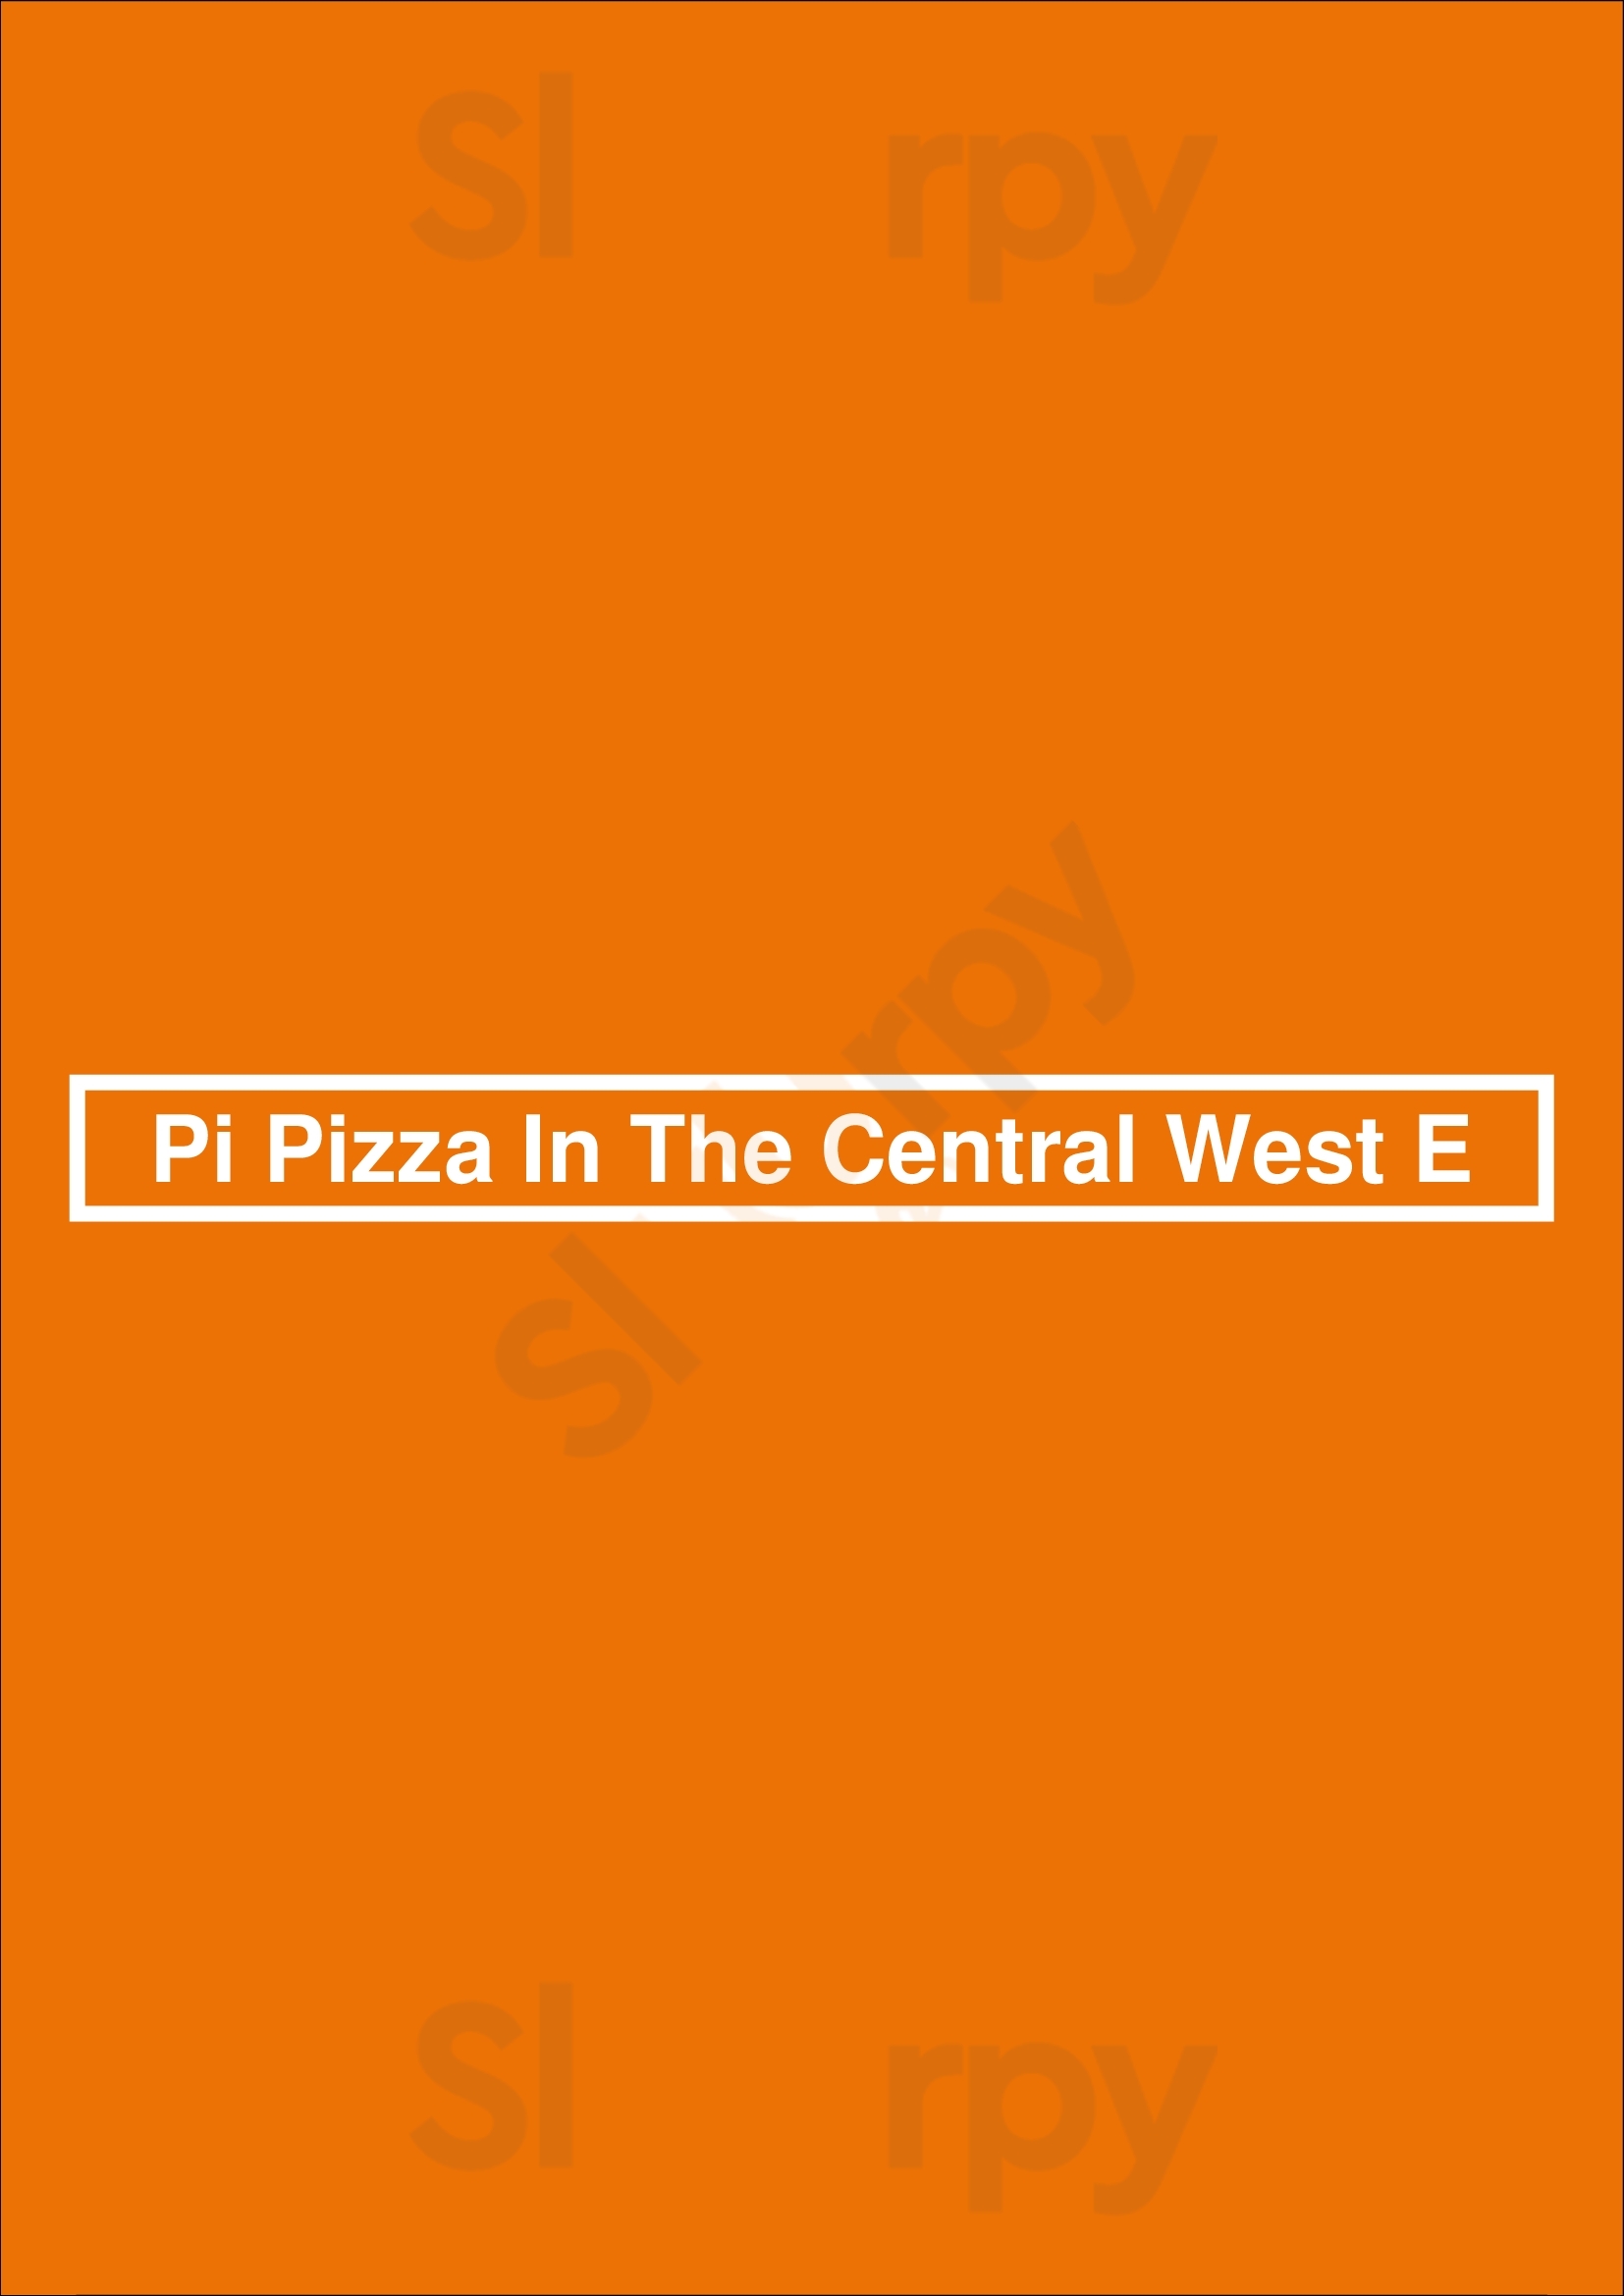 Pi Pizza In The Central West E Saint Louis Menu - 1